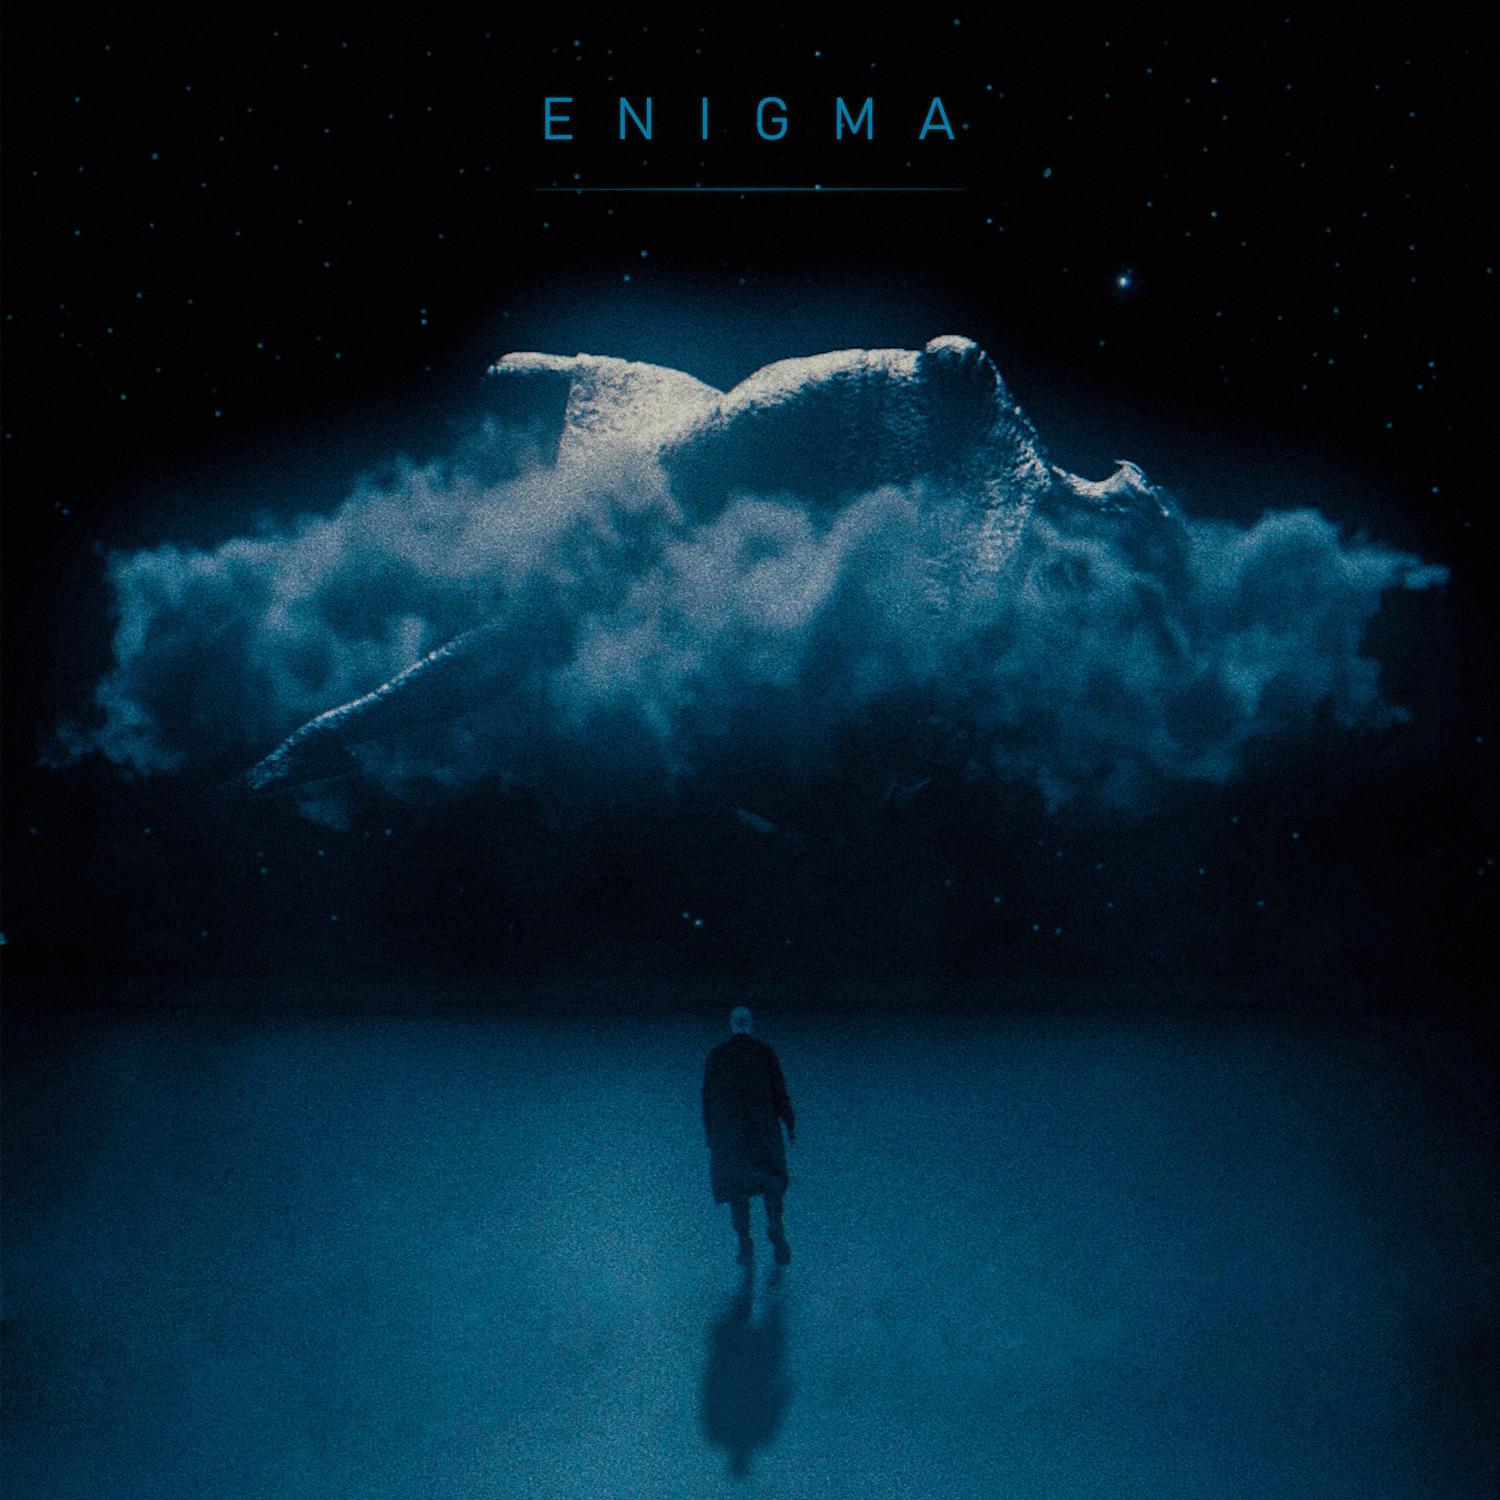 Слушать enigma в качестве. Enigma группа обложки. Энигма обложки альбомов. Обложка музыкального альбома инигма. The limba обложка.